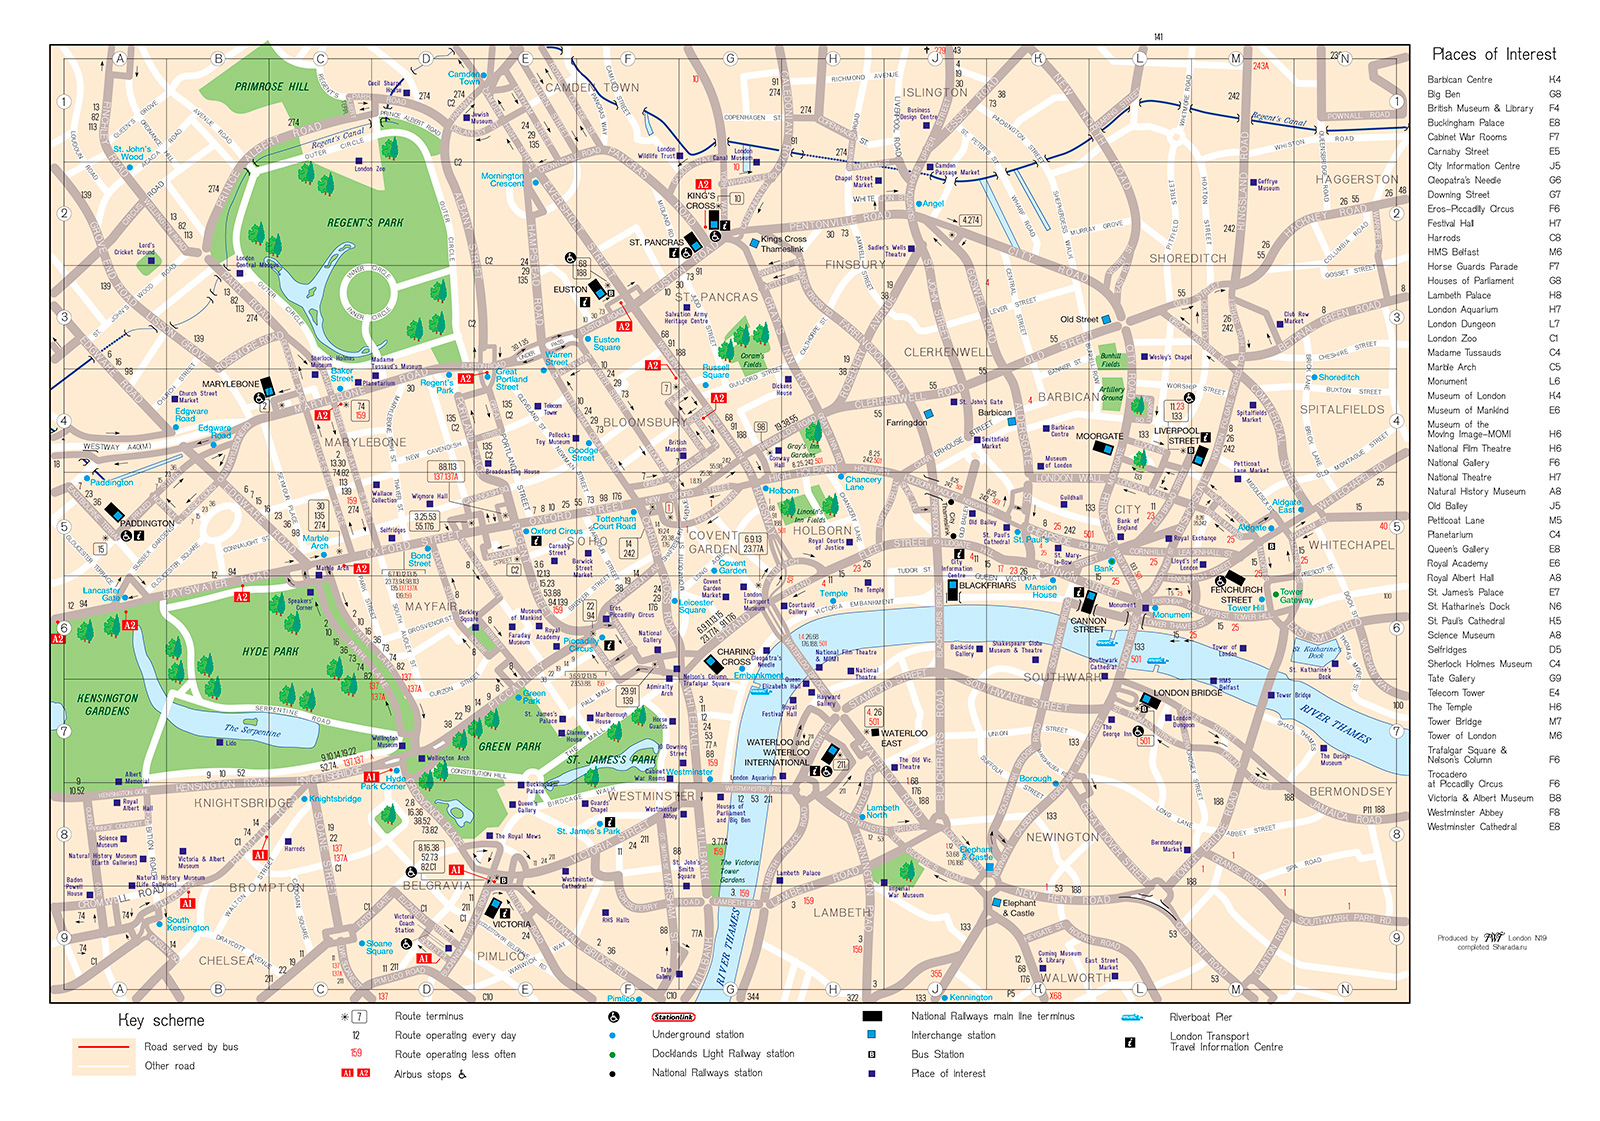 карта лондона на английском языке